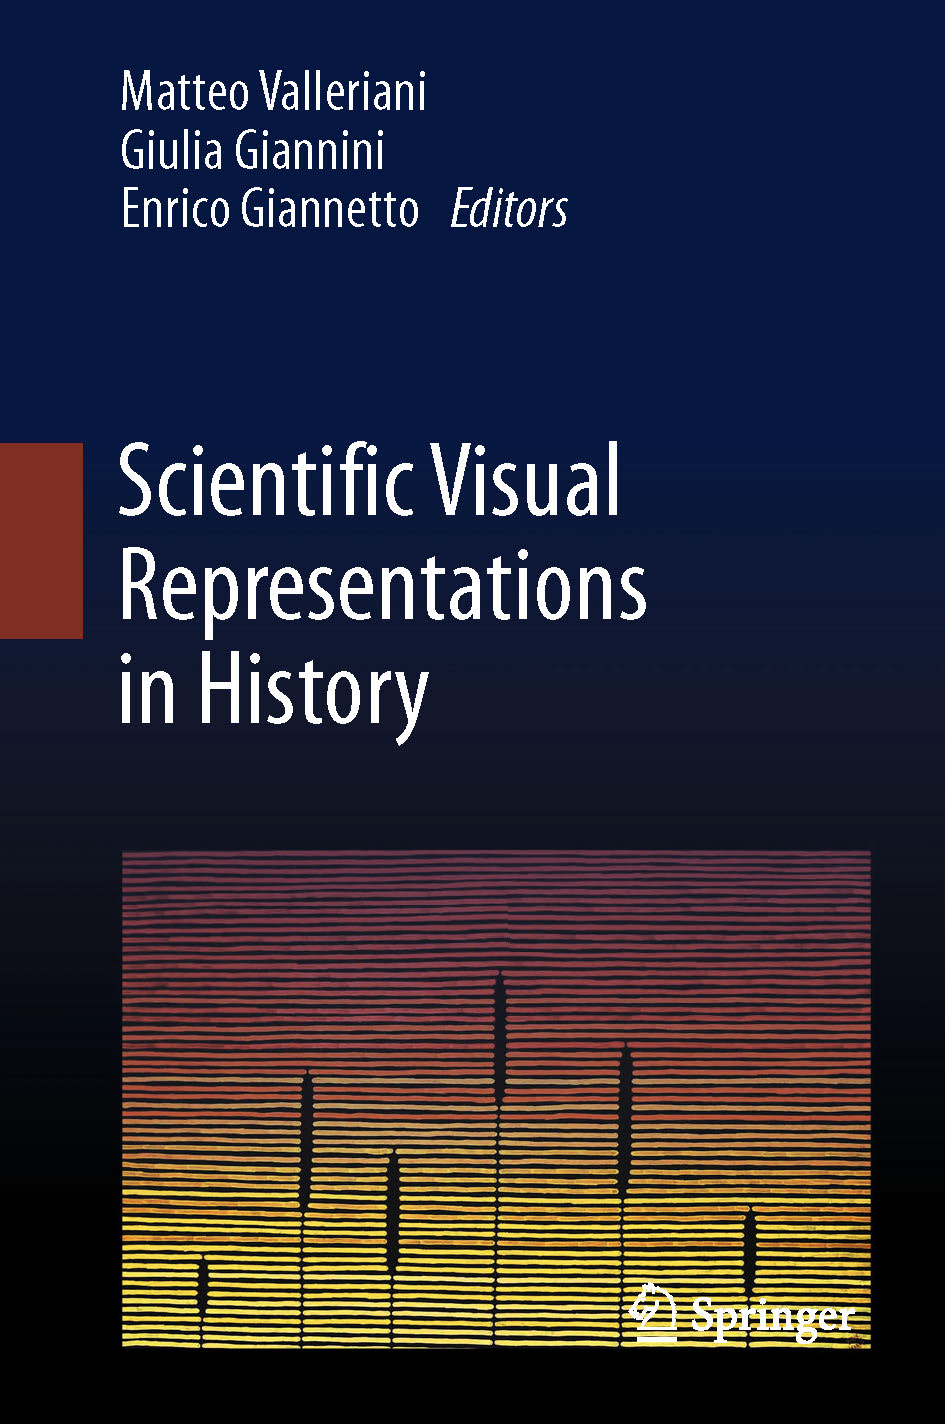 book cover: Valleriani et al: Scientific Visual Representations in History (2023)